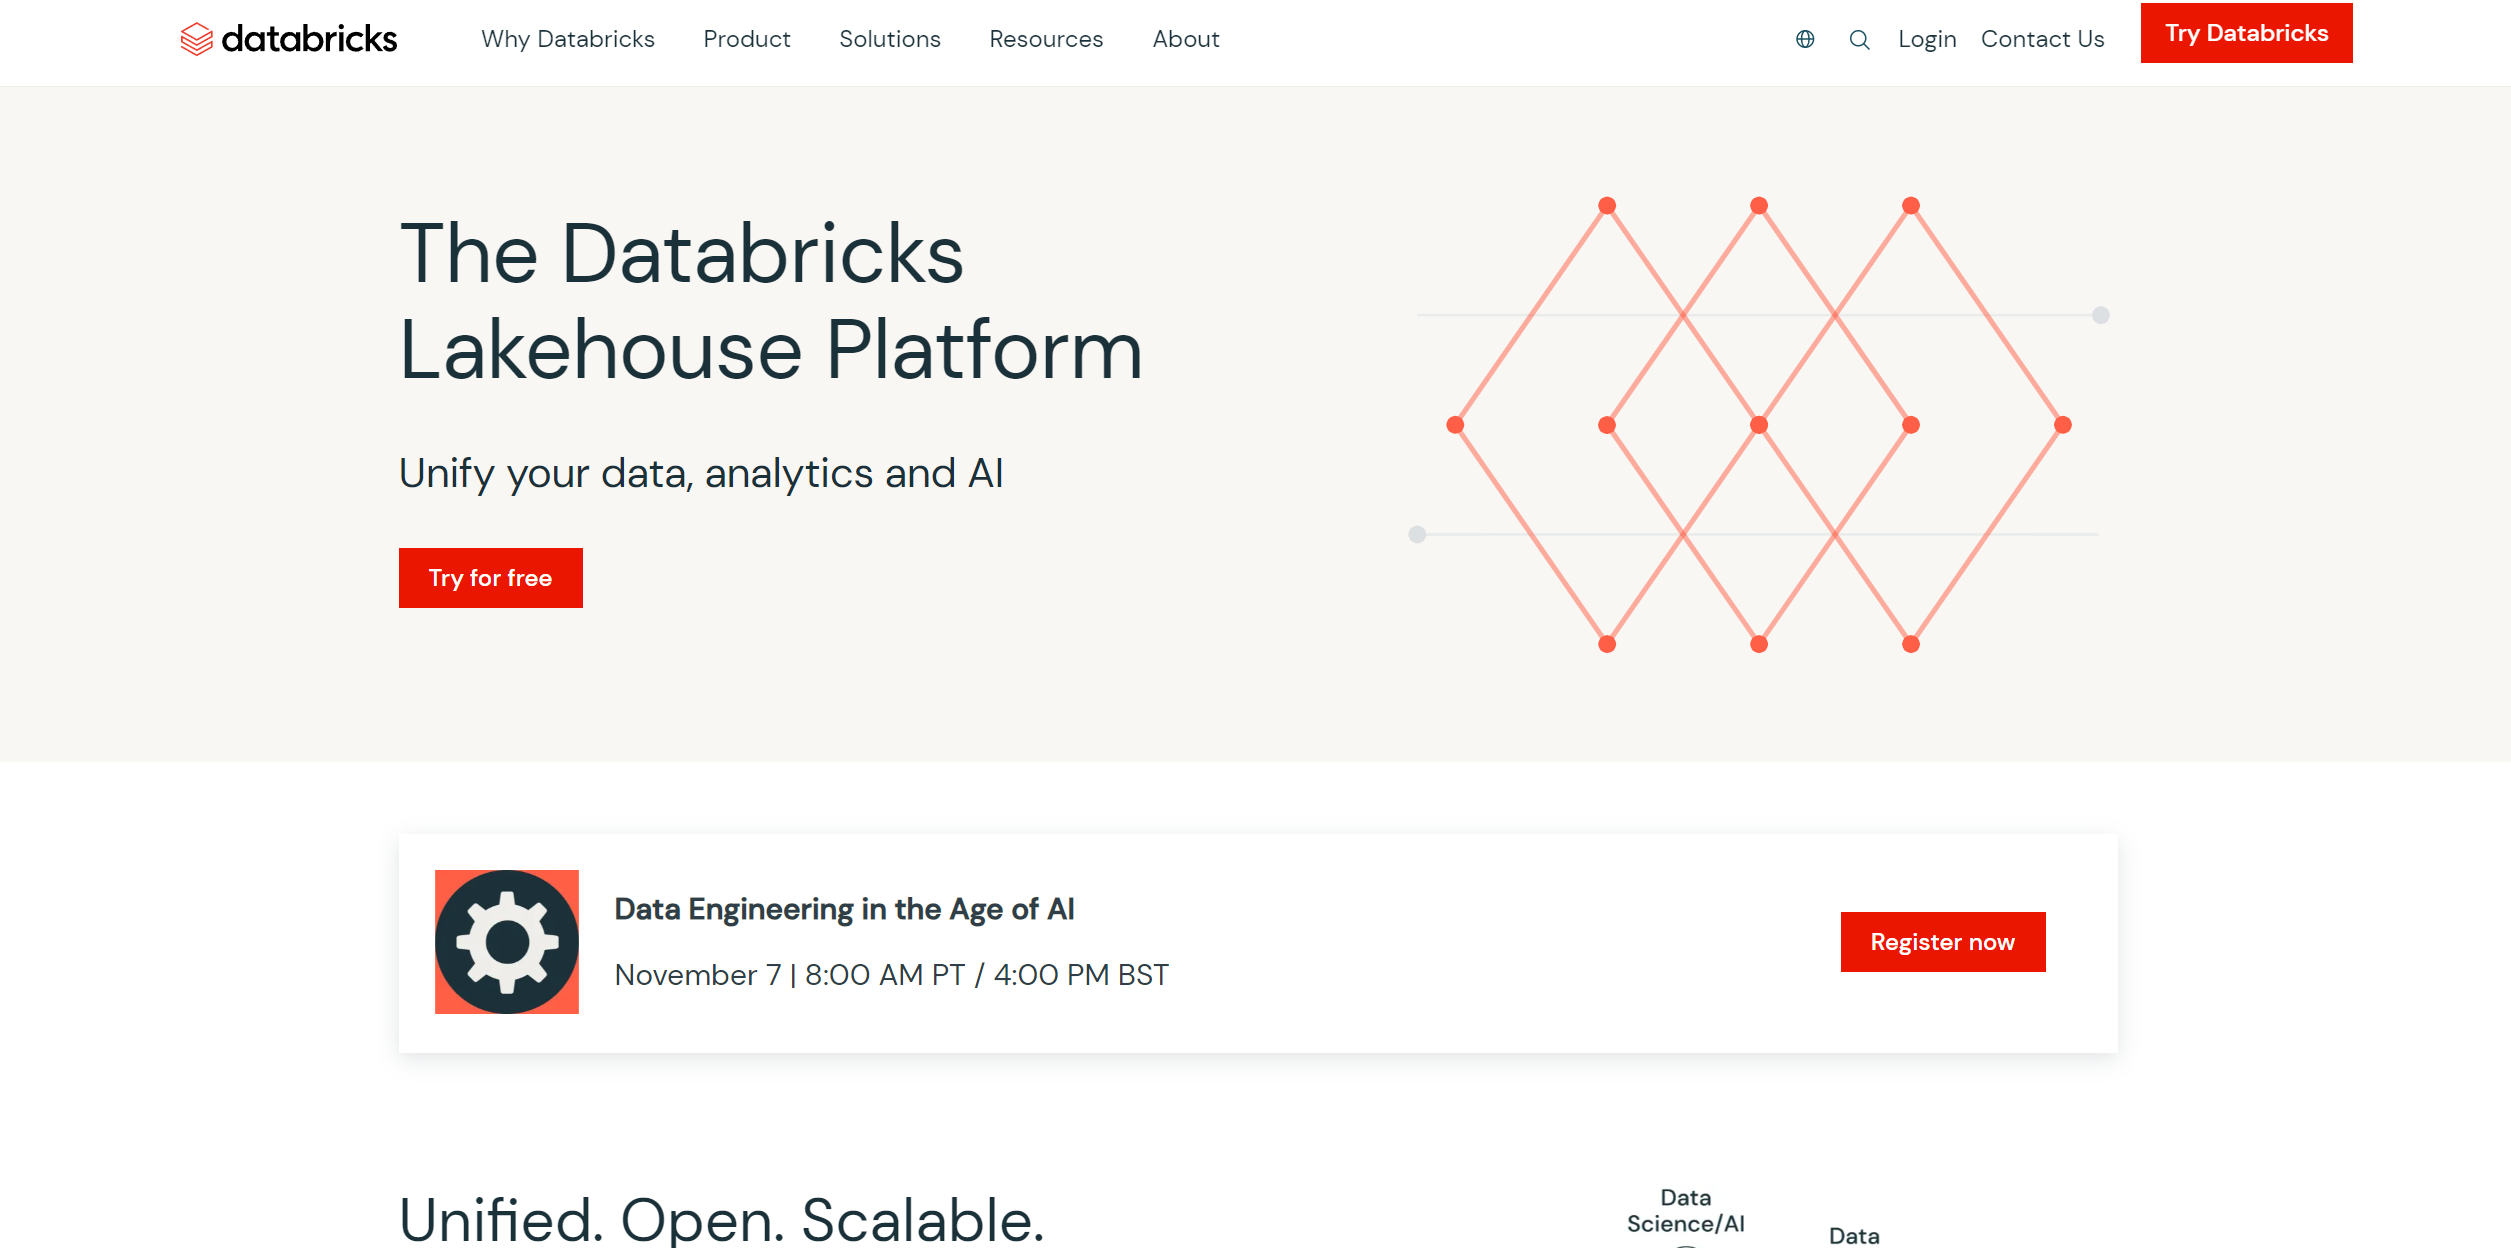 Plataforma Lakehouse de Databricks